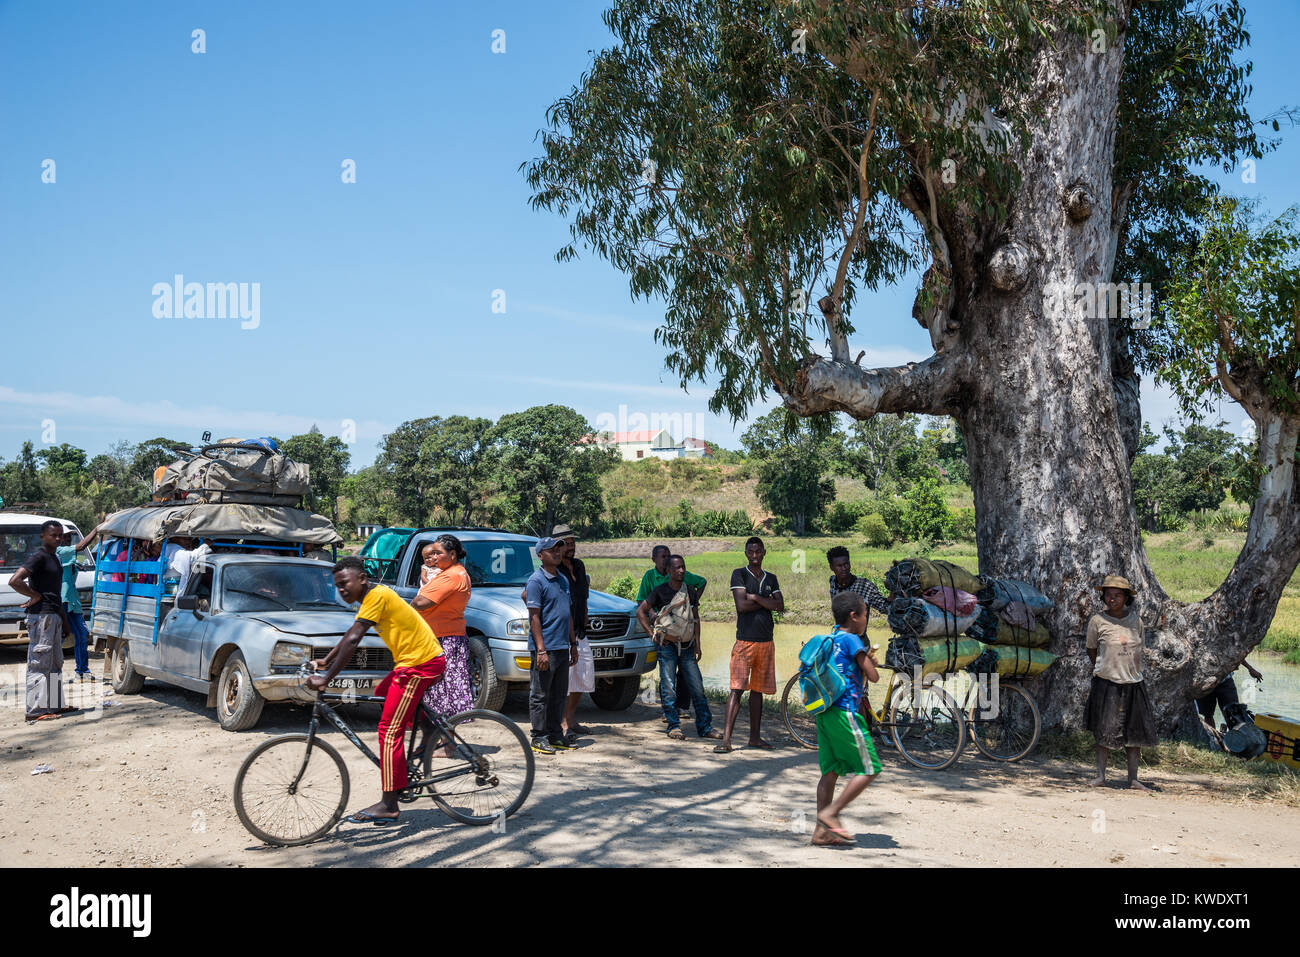 Unter einem großen Baum, lokale Leute, zusammen mit Autos, Lkws, Fahrräder, warten auf eine gesperrte Straße zu öffnen. Madagaskar, Afrika. Stockfoto